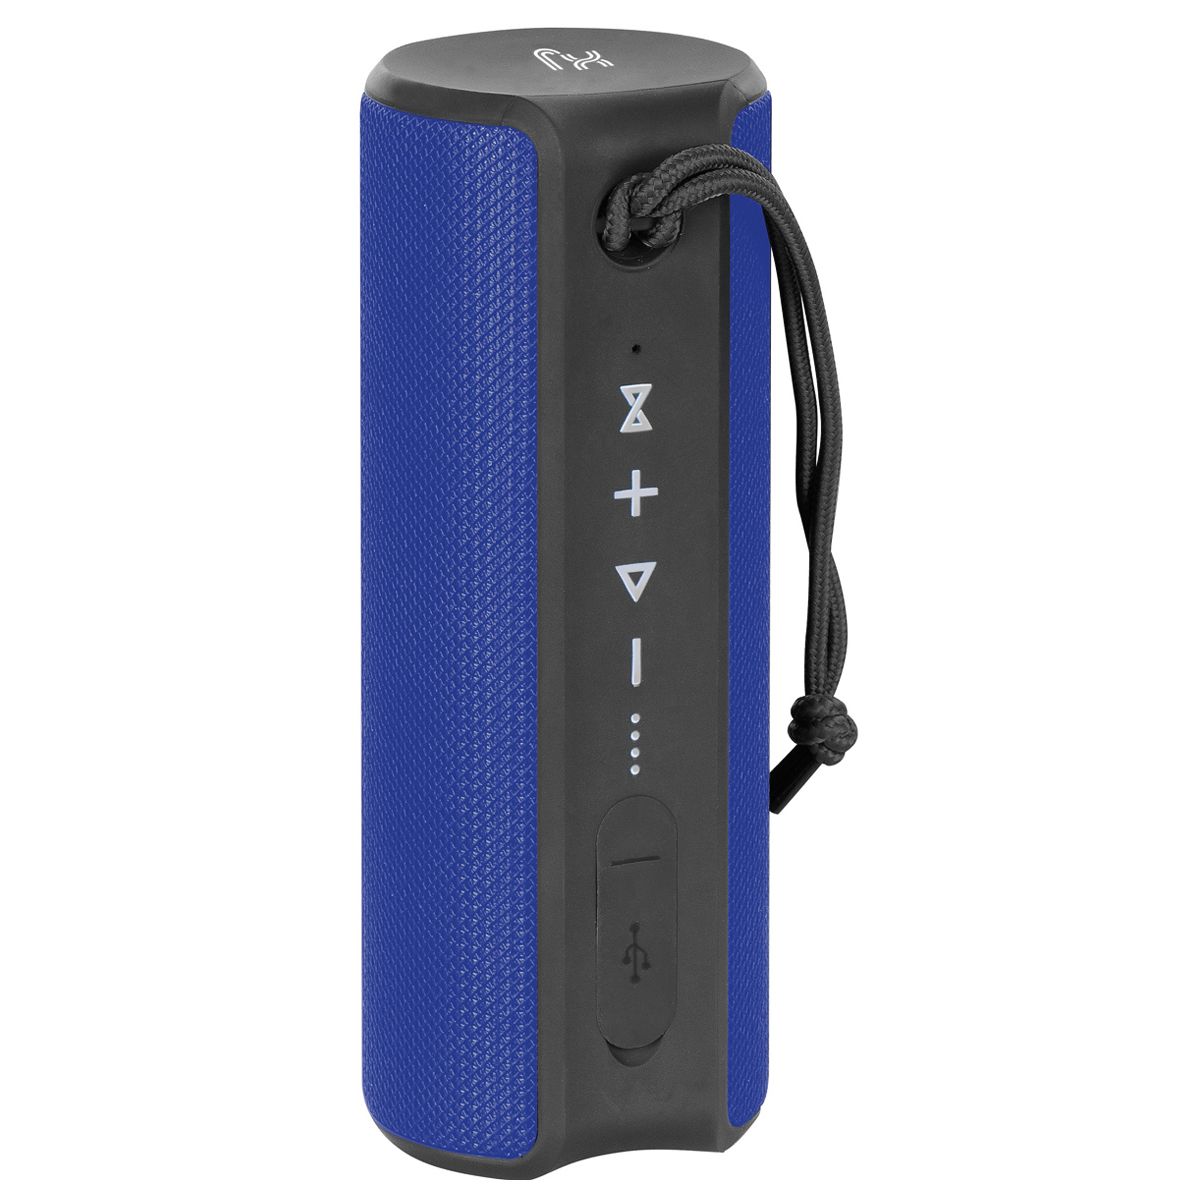 X-JUMP XJ-90 Cassa Bluetooth portatile amplificata 24W, Altoparlante TWS, ingresso AUX e MicroSD, microfono incorporato, speaker blu resistente all'acqua waterproof IPX7